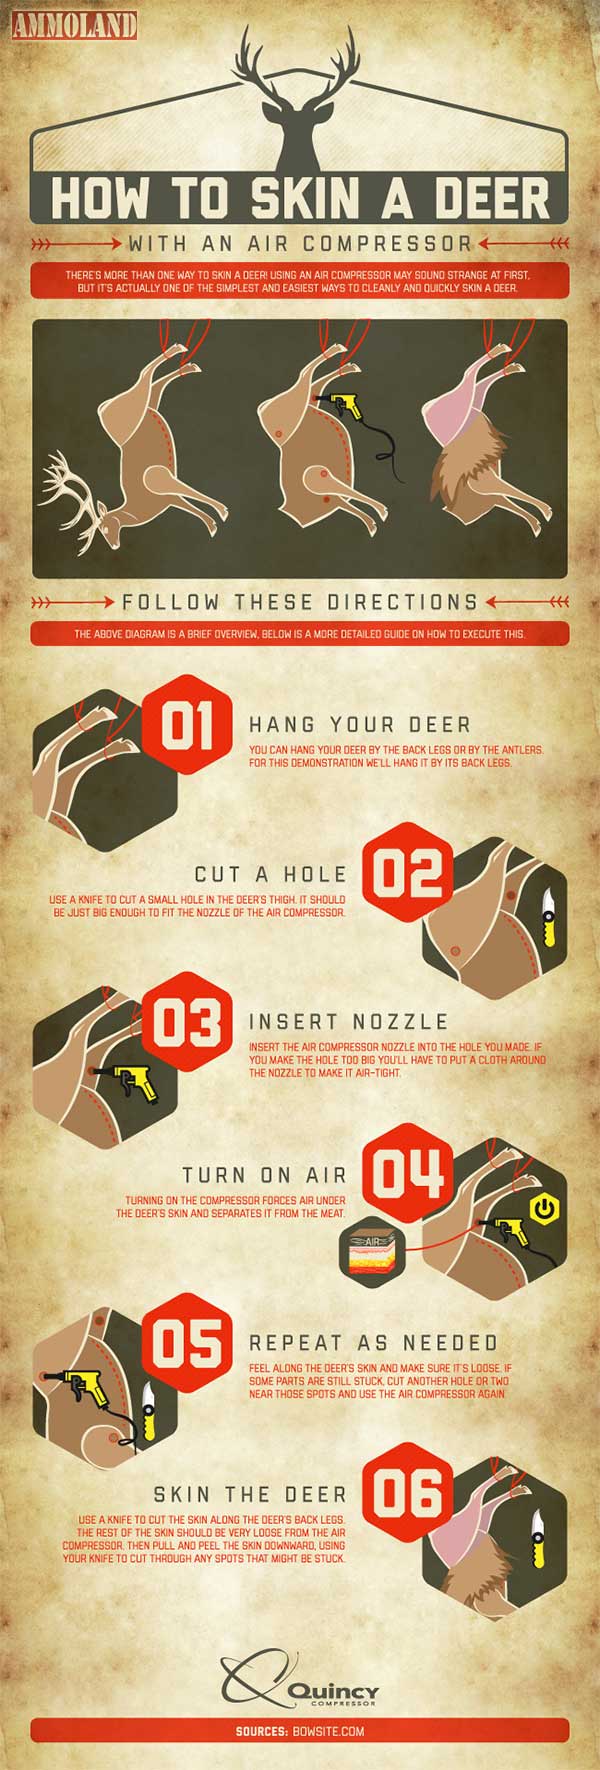 How to skin a deer (courtesy ammoland.com)